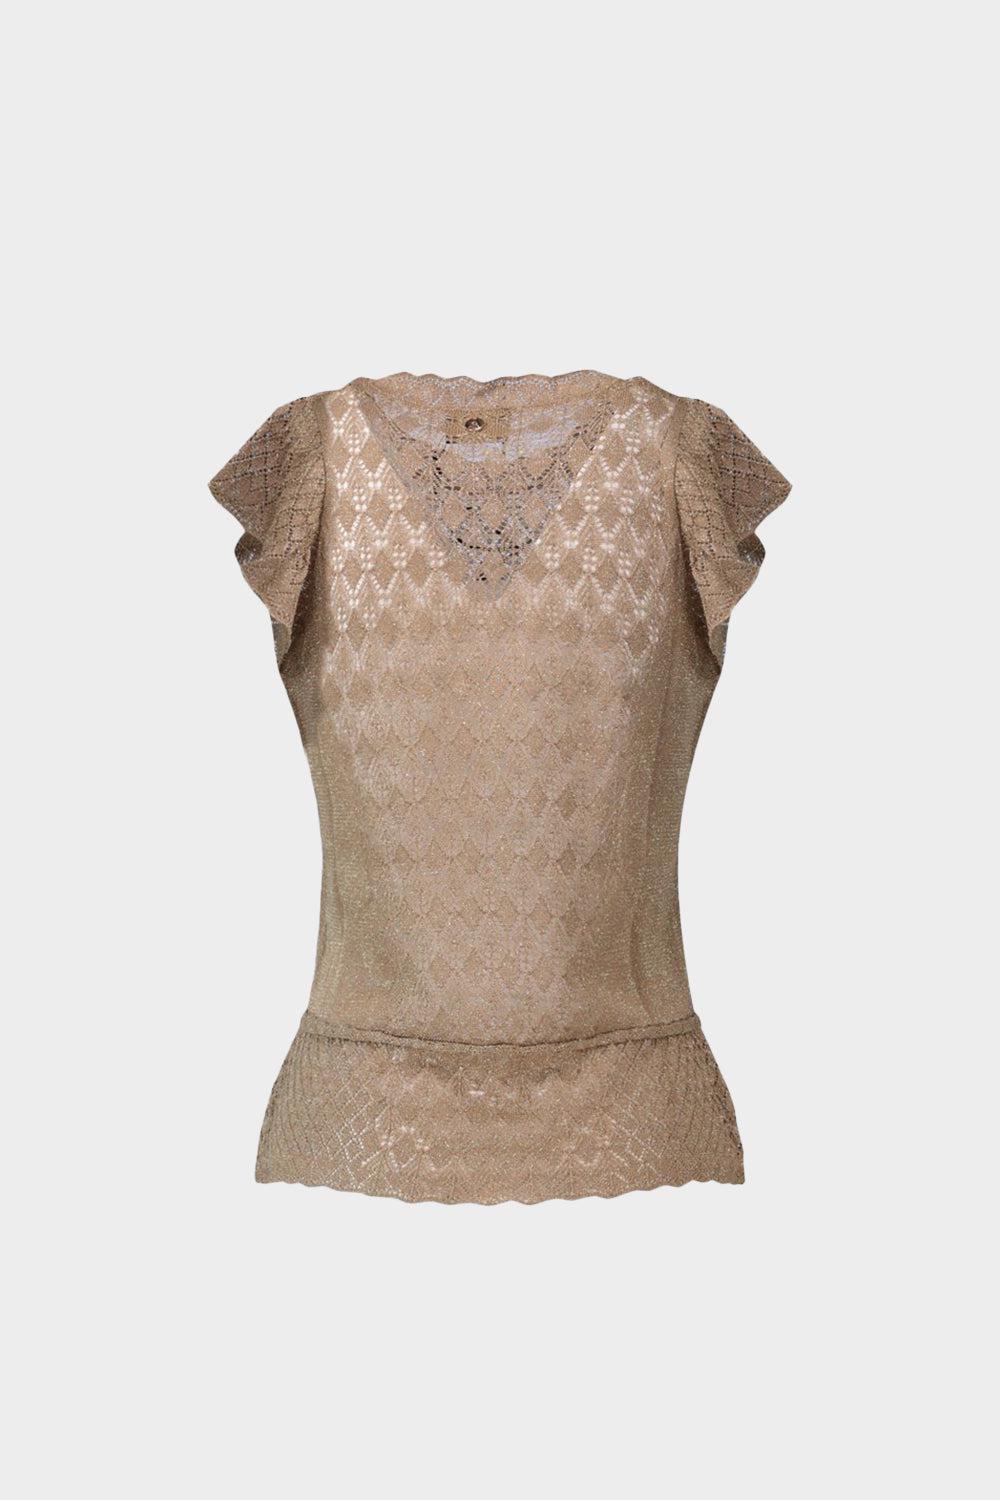 חולצת סלסולים לנשים עיטורי תחרה LIU JO Vendome online | ונדום .